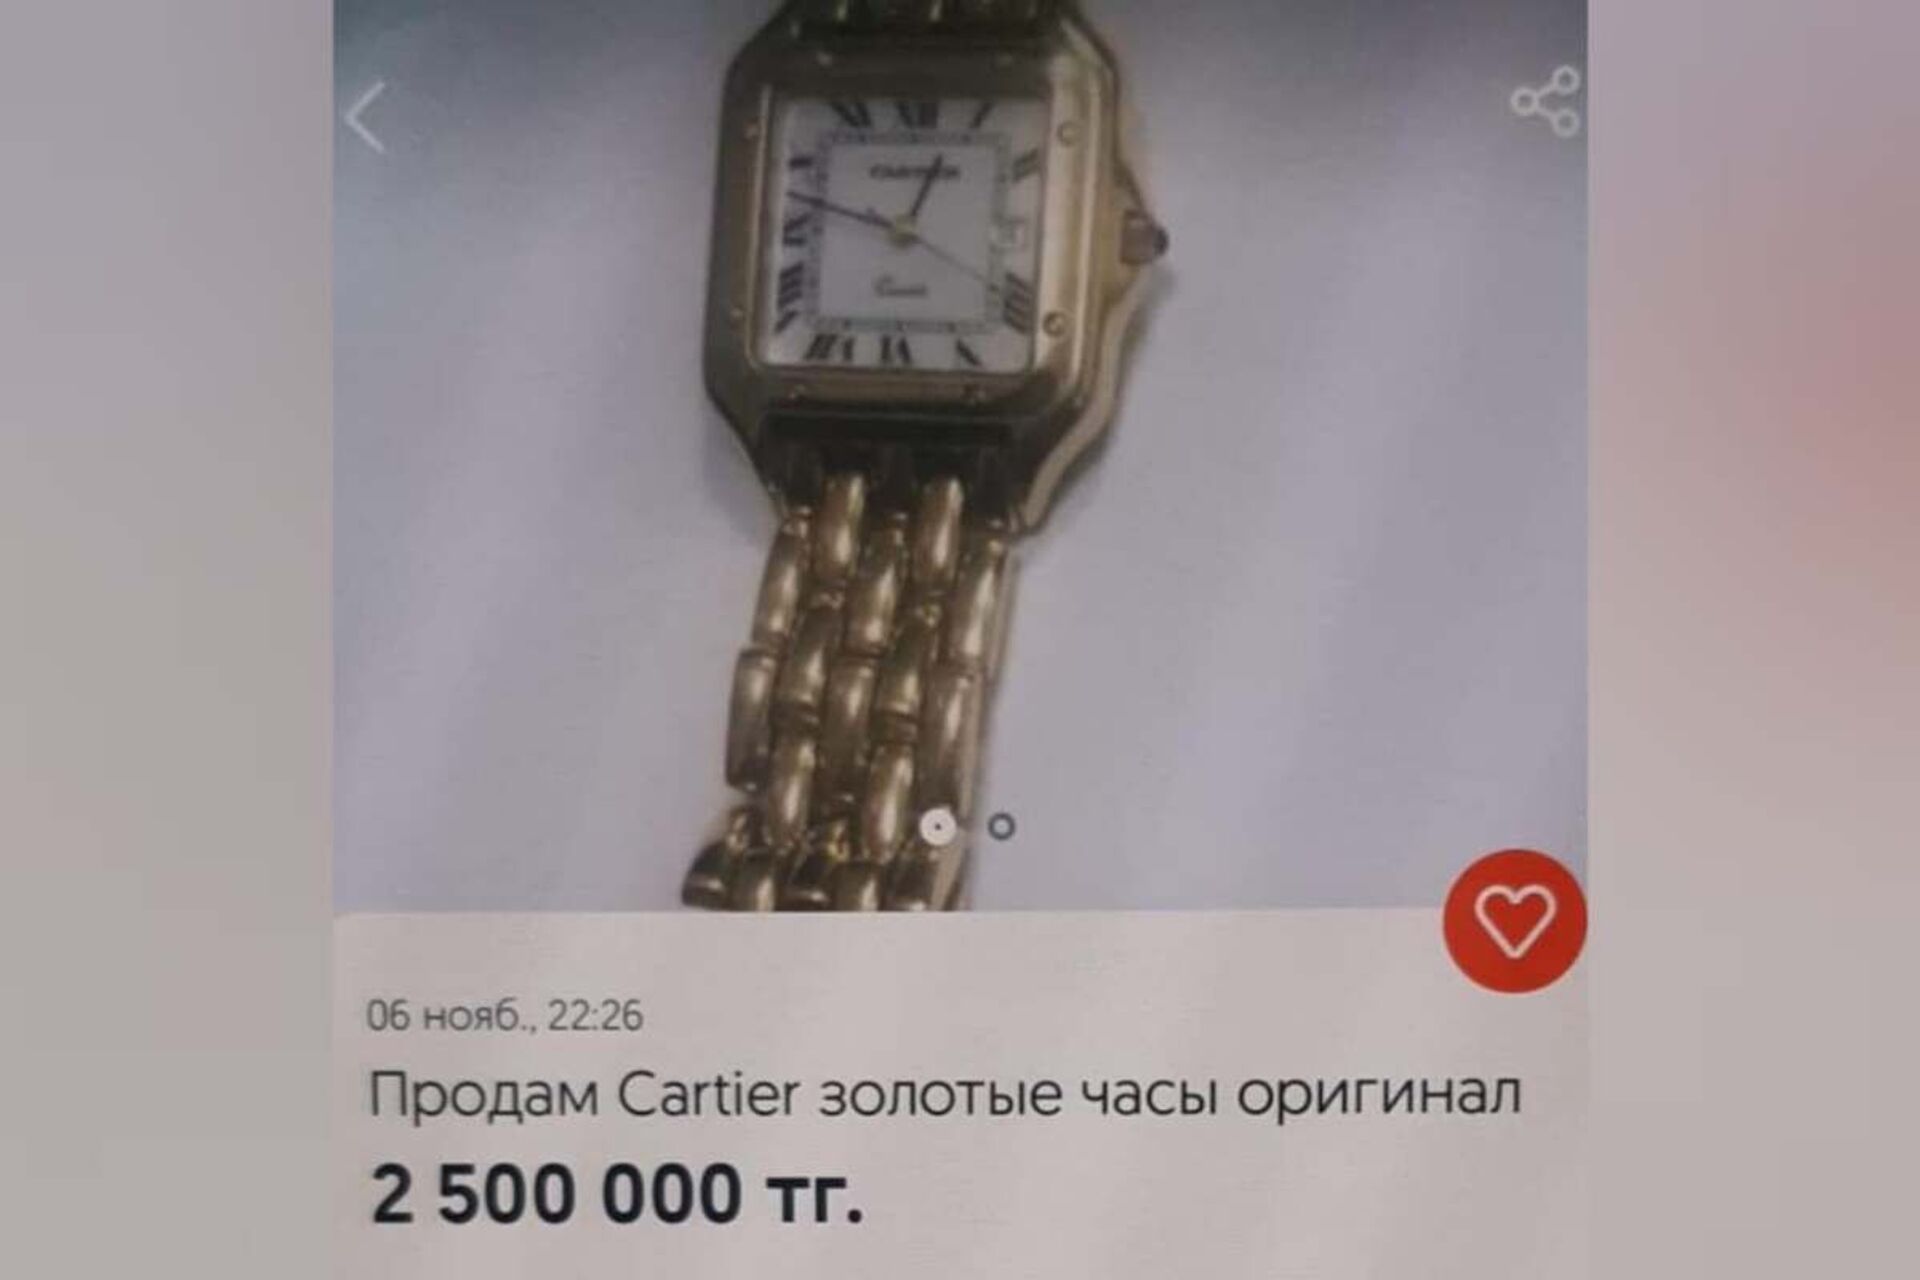 Часы за 2,5 млн тенге похитил мужчина в торговом доме в Нур-Султане - Sputnik Казахстан, 1920, 23.11.2021